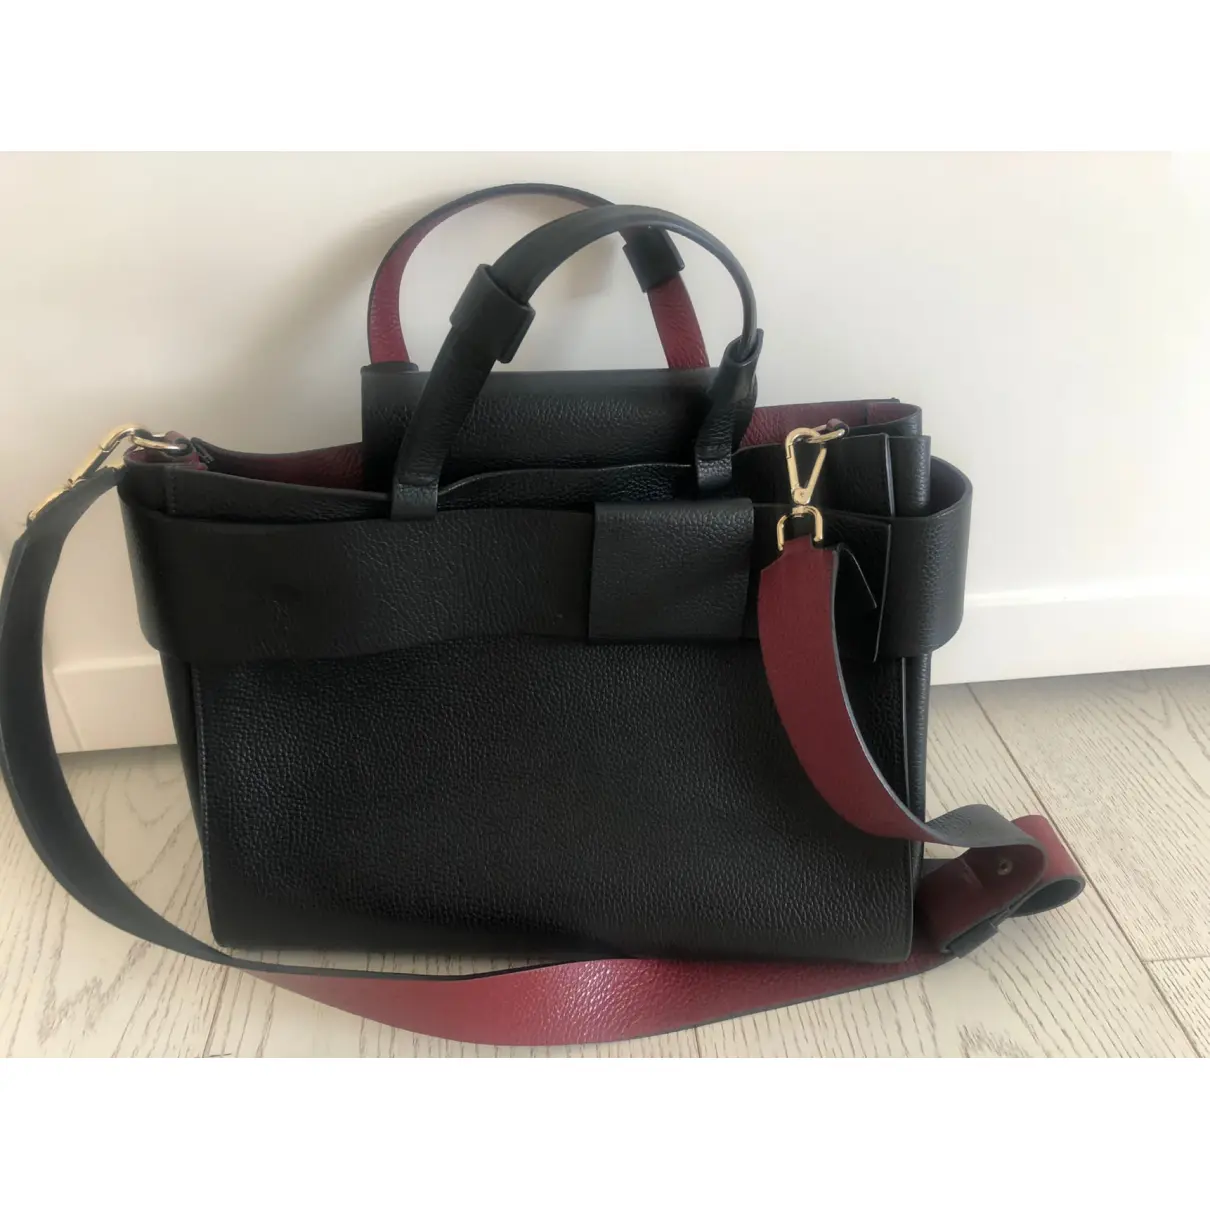 Buy Liviana Conti Leather handbag online